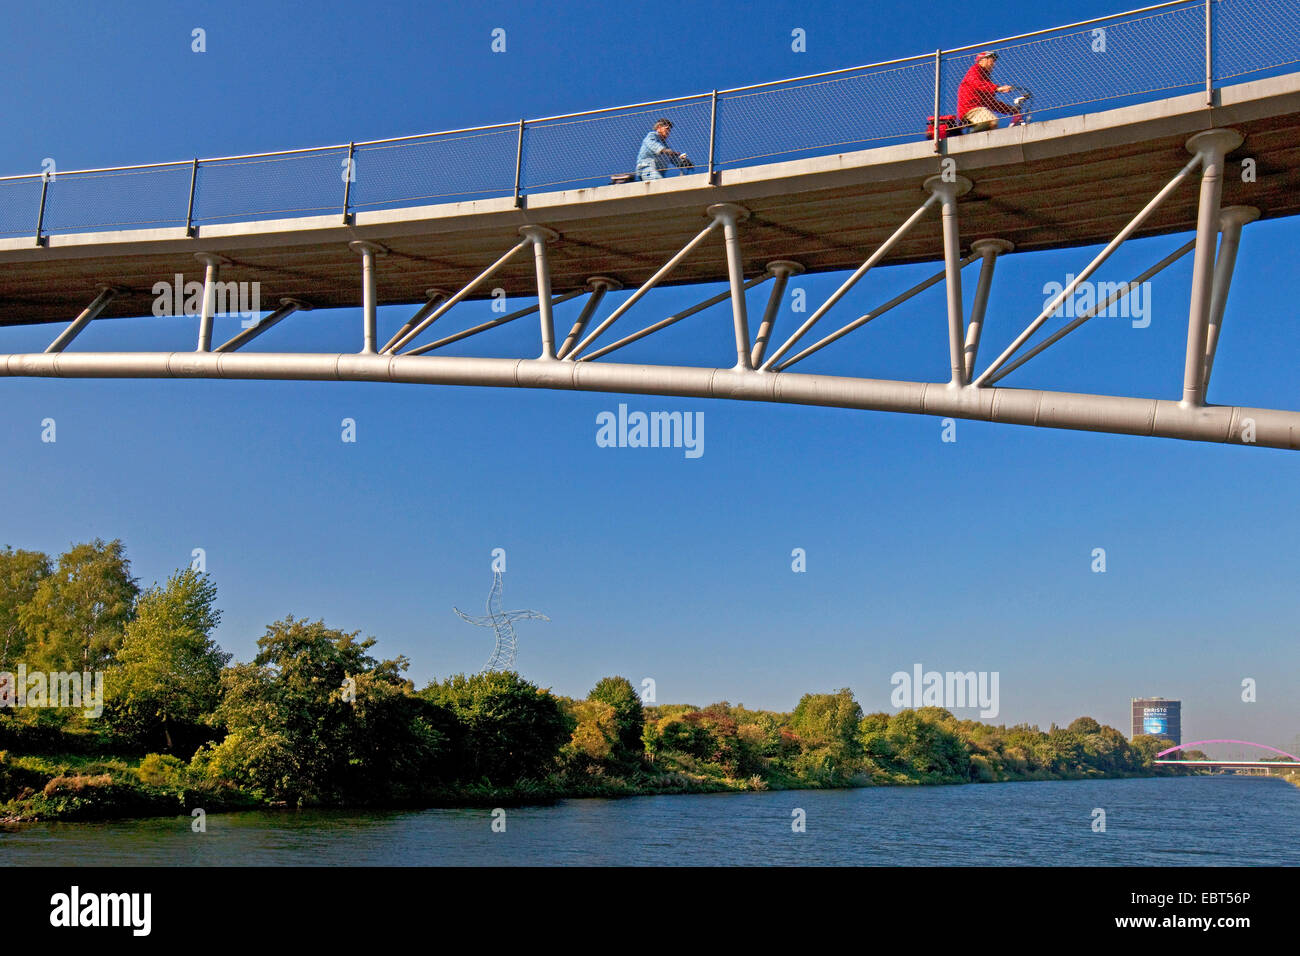 Deux cyclistes sur pont sur Canal Rhine-Herne Gehoelzgarten attree et jardin d'arbustes Ripshorst, Allemagne, Rhénanie du Nord-Westphalie, Ruhr, Oberhausen Banque D'Images